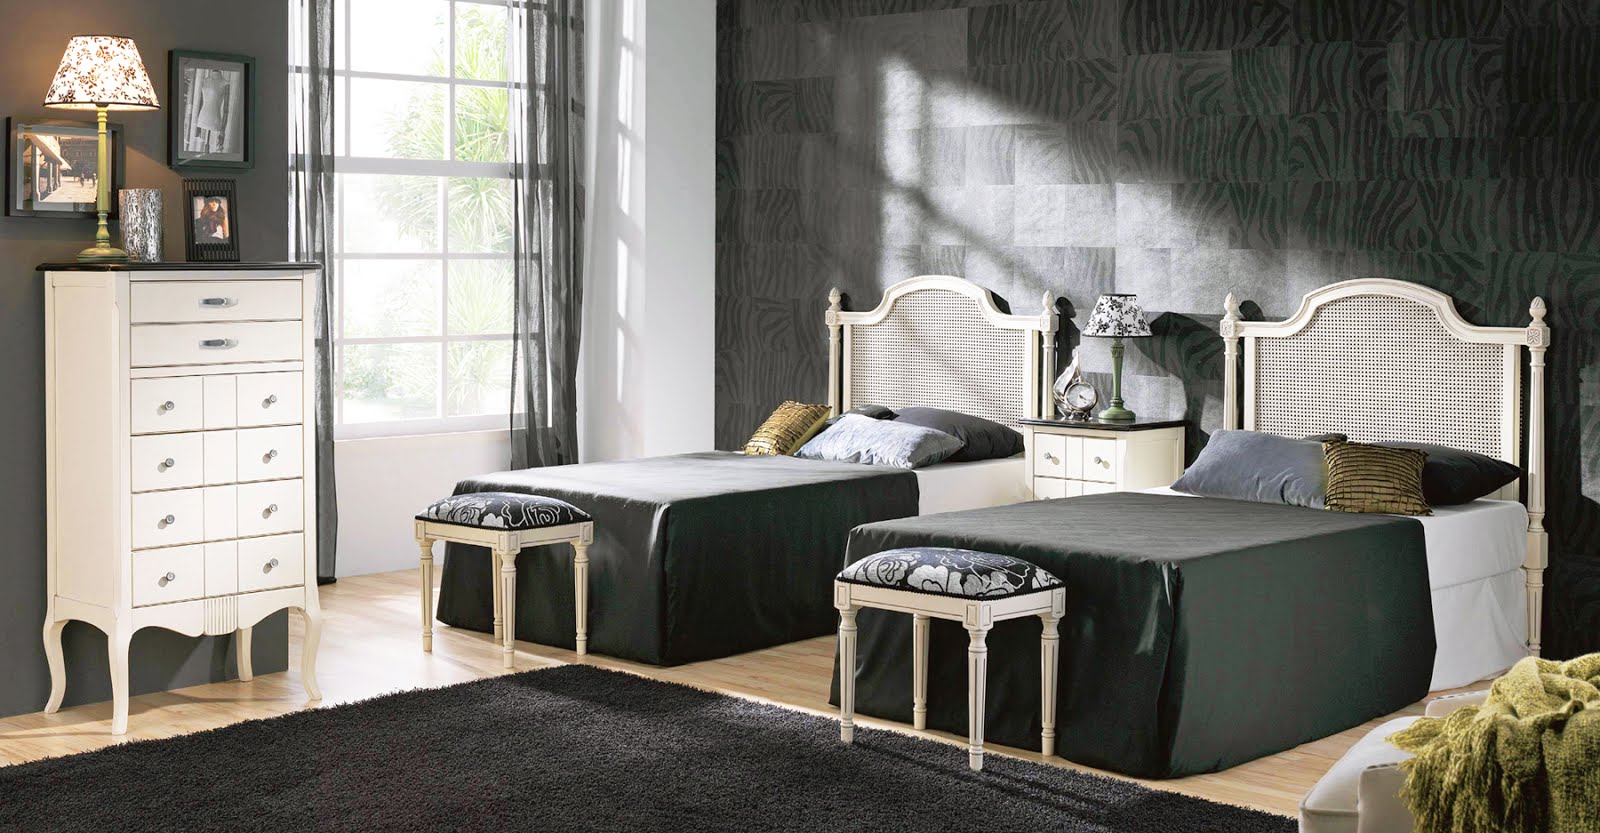 Dormitorio con muebles estilo vintage. Vía tudecora.com